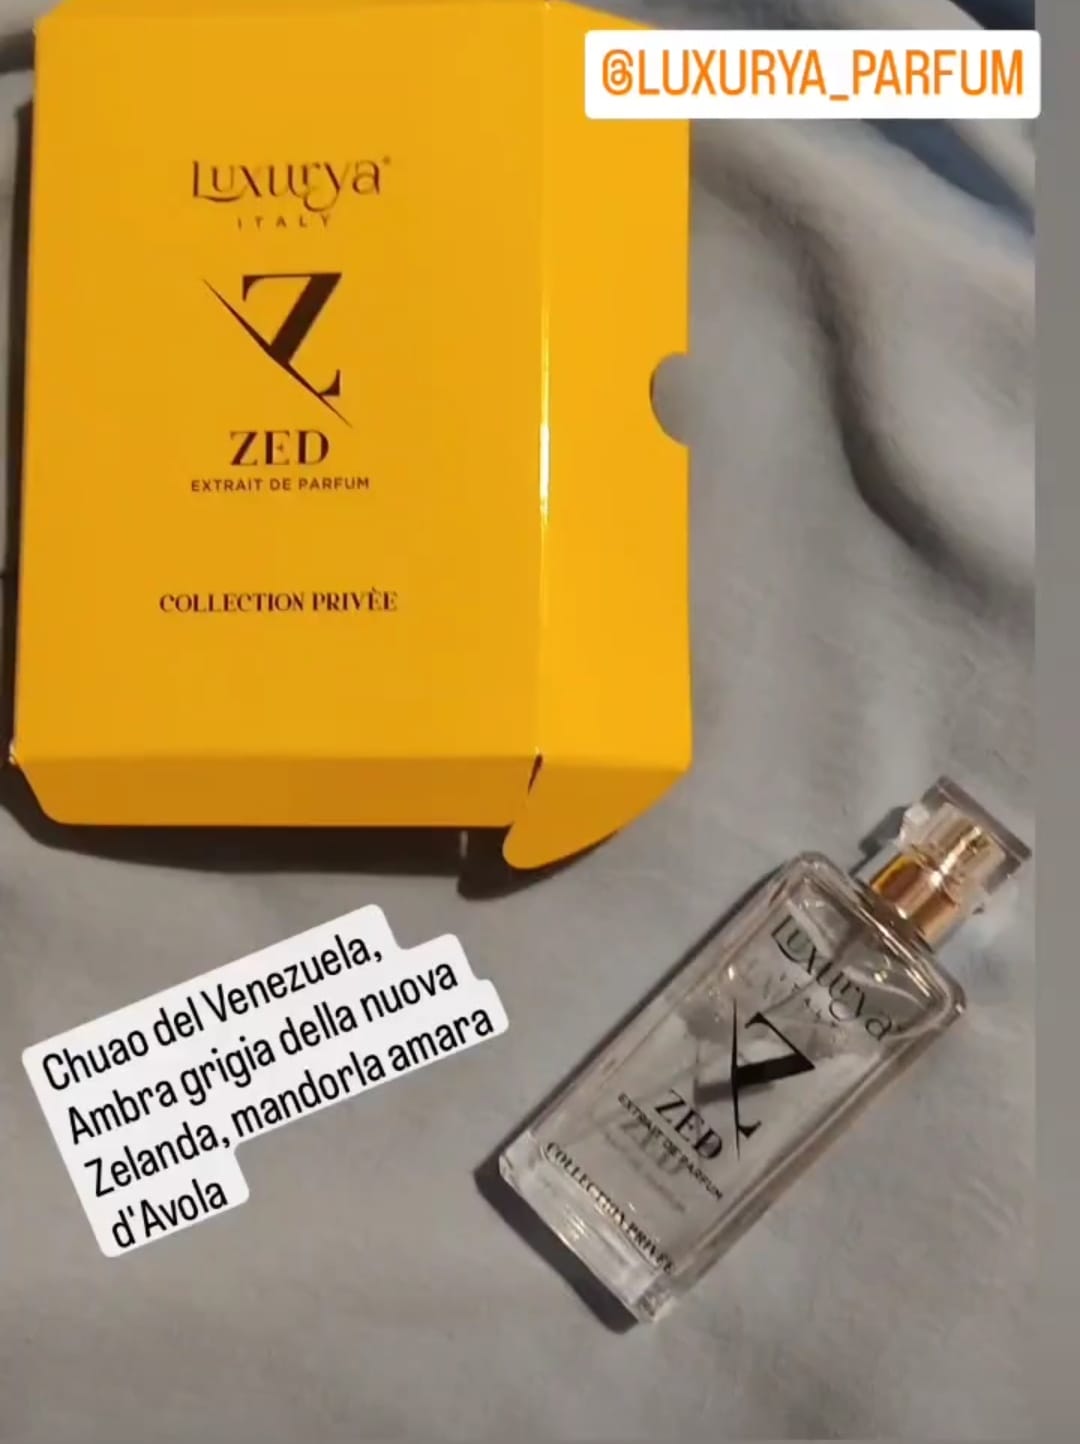 Zed, la fragranza di Luxurya Parfum che spezza gli schemi e rende  irresistibili  Le news di Isa Voi Zed, la fragranza di Luxurya che  spezza gli schemi e rende irresistibili